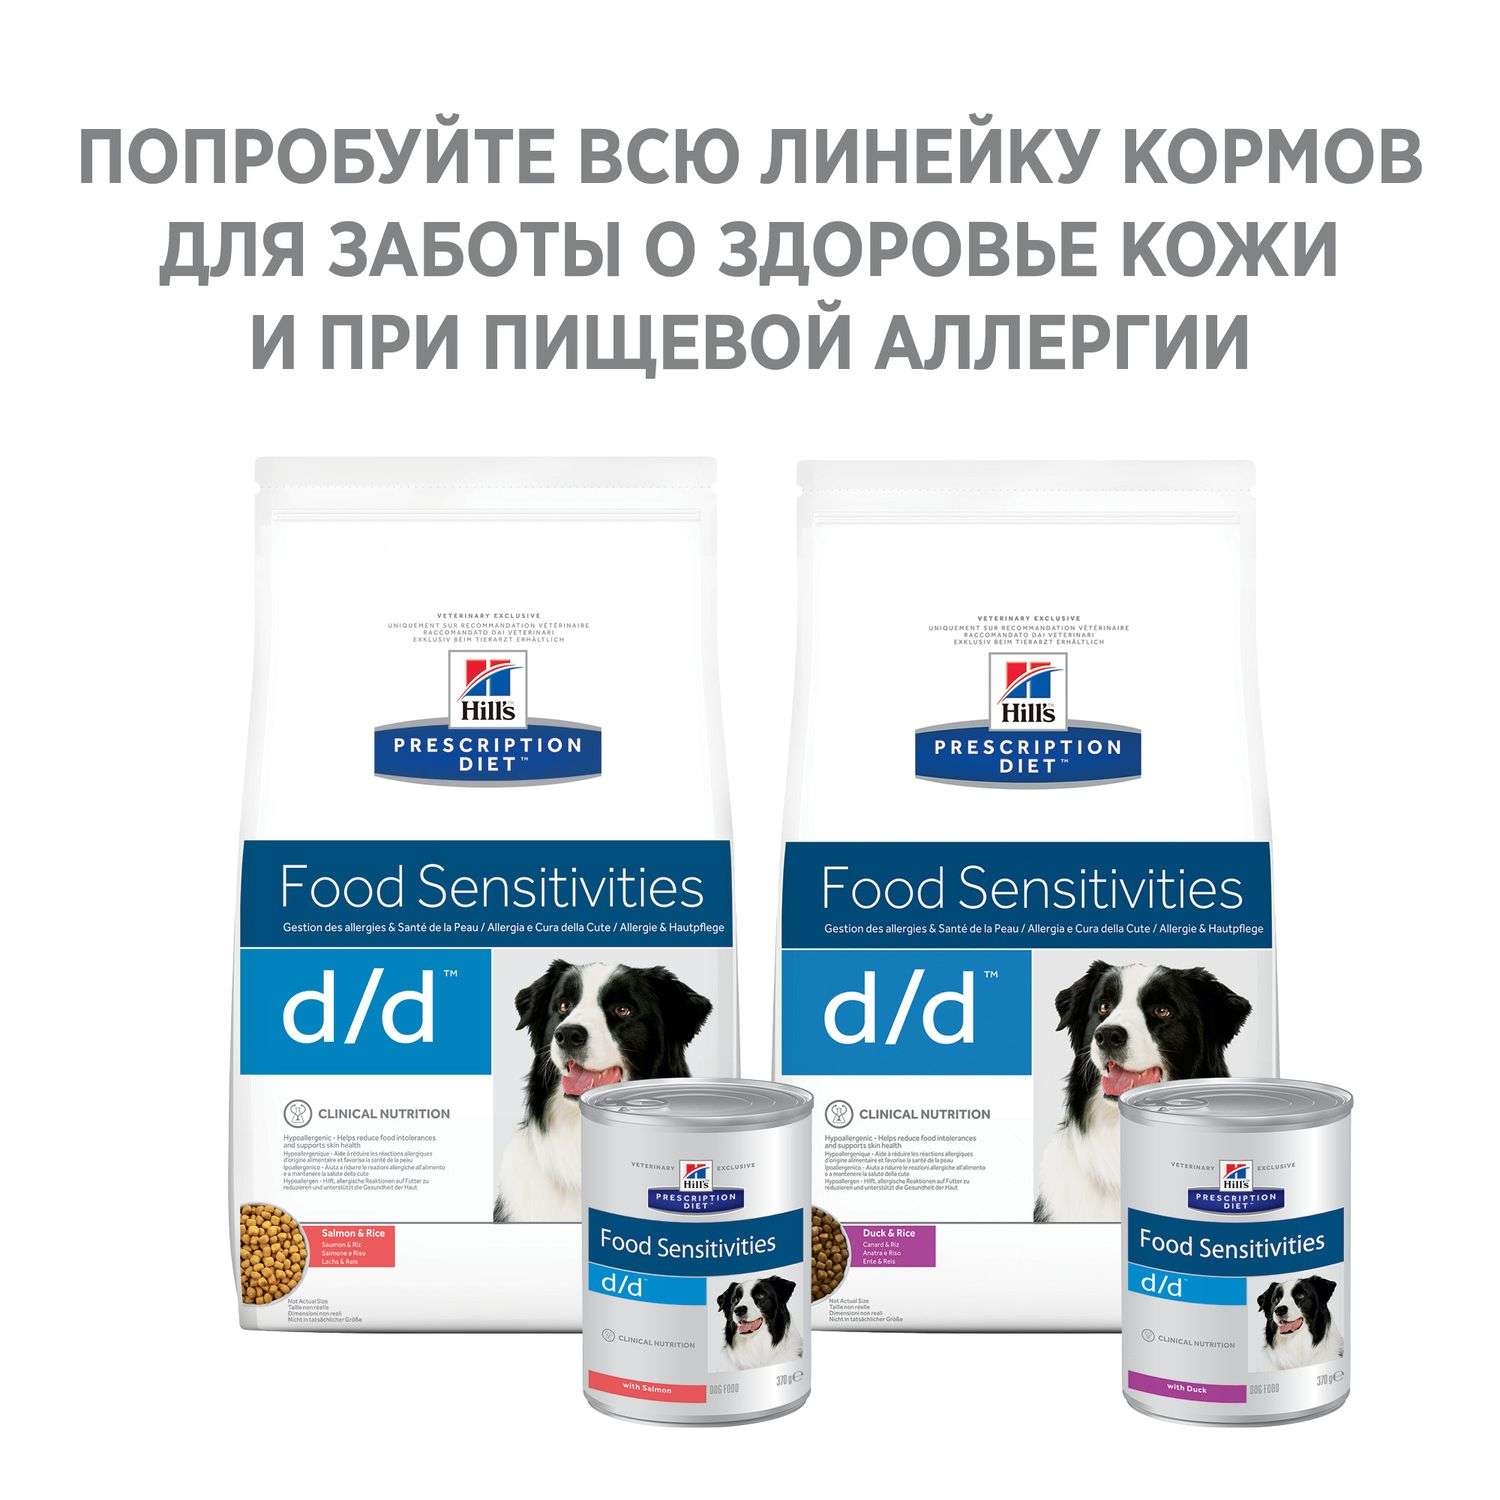 Корм для собак HILLS 370г Prescription Diet d/d Food Sensitivities для кожи при аллергии и заболеваниях кожи с лососем консервированный - фото 5